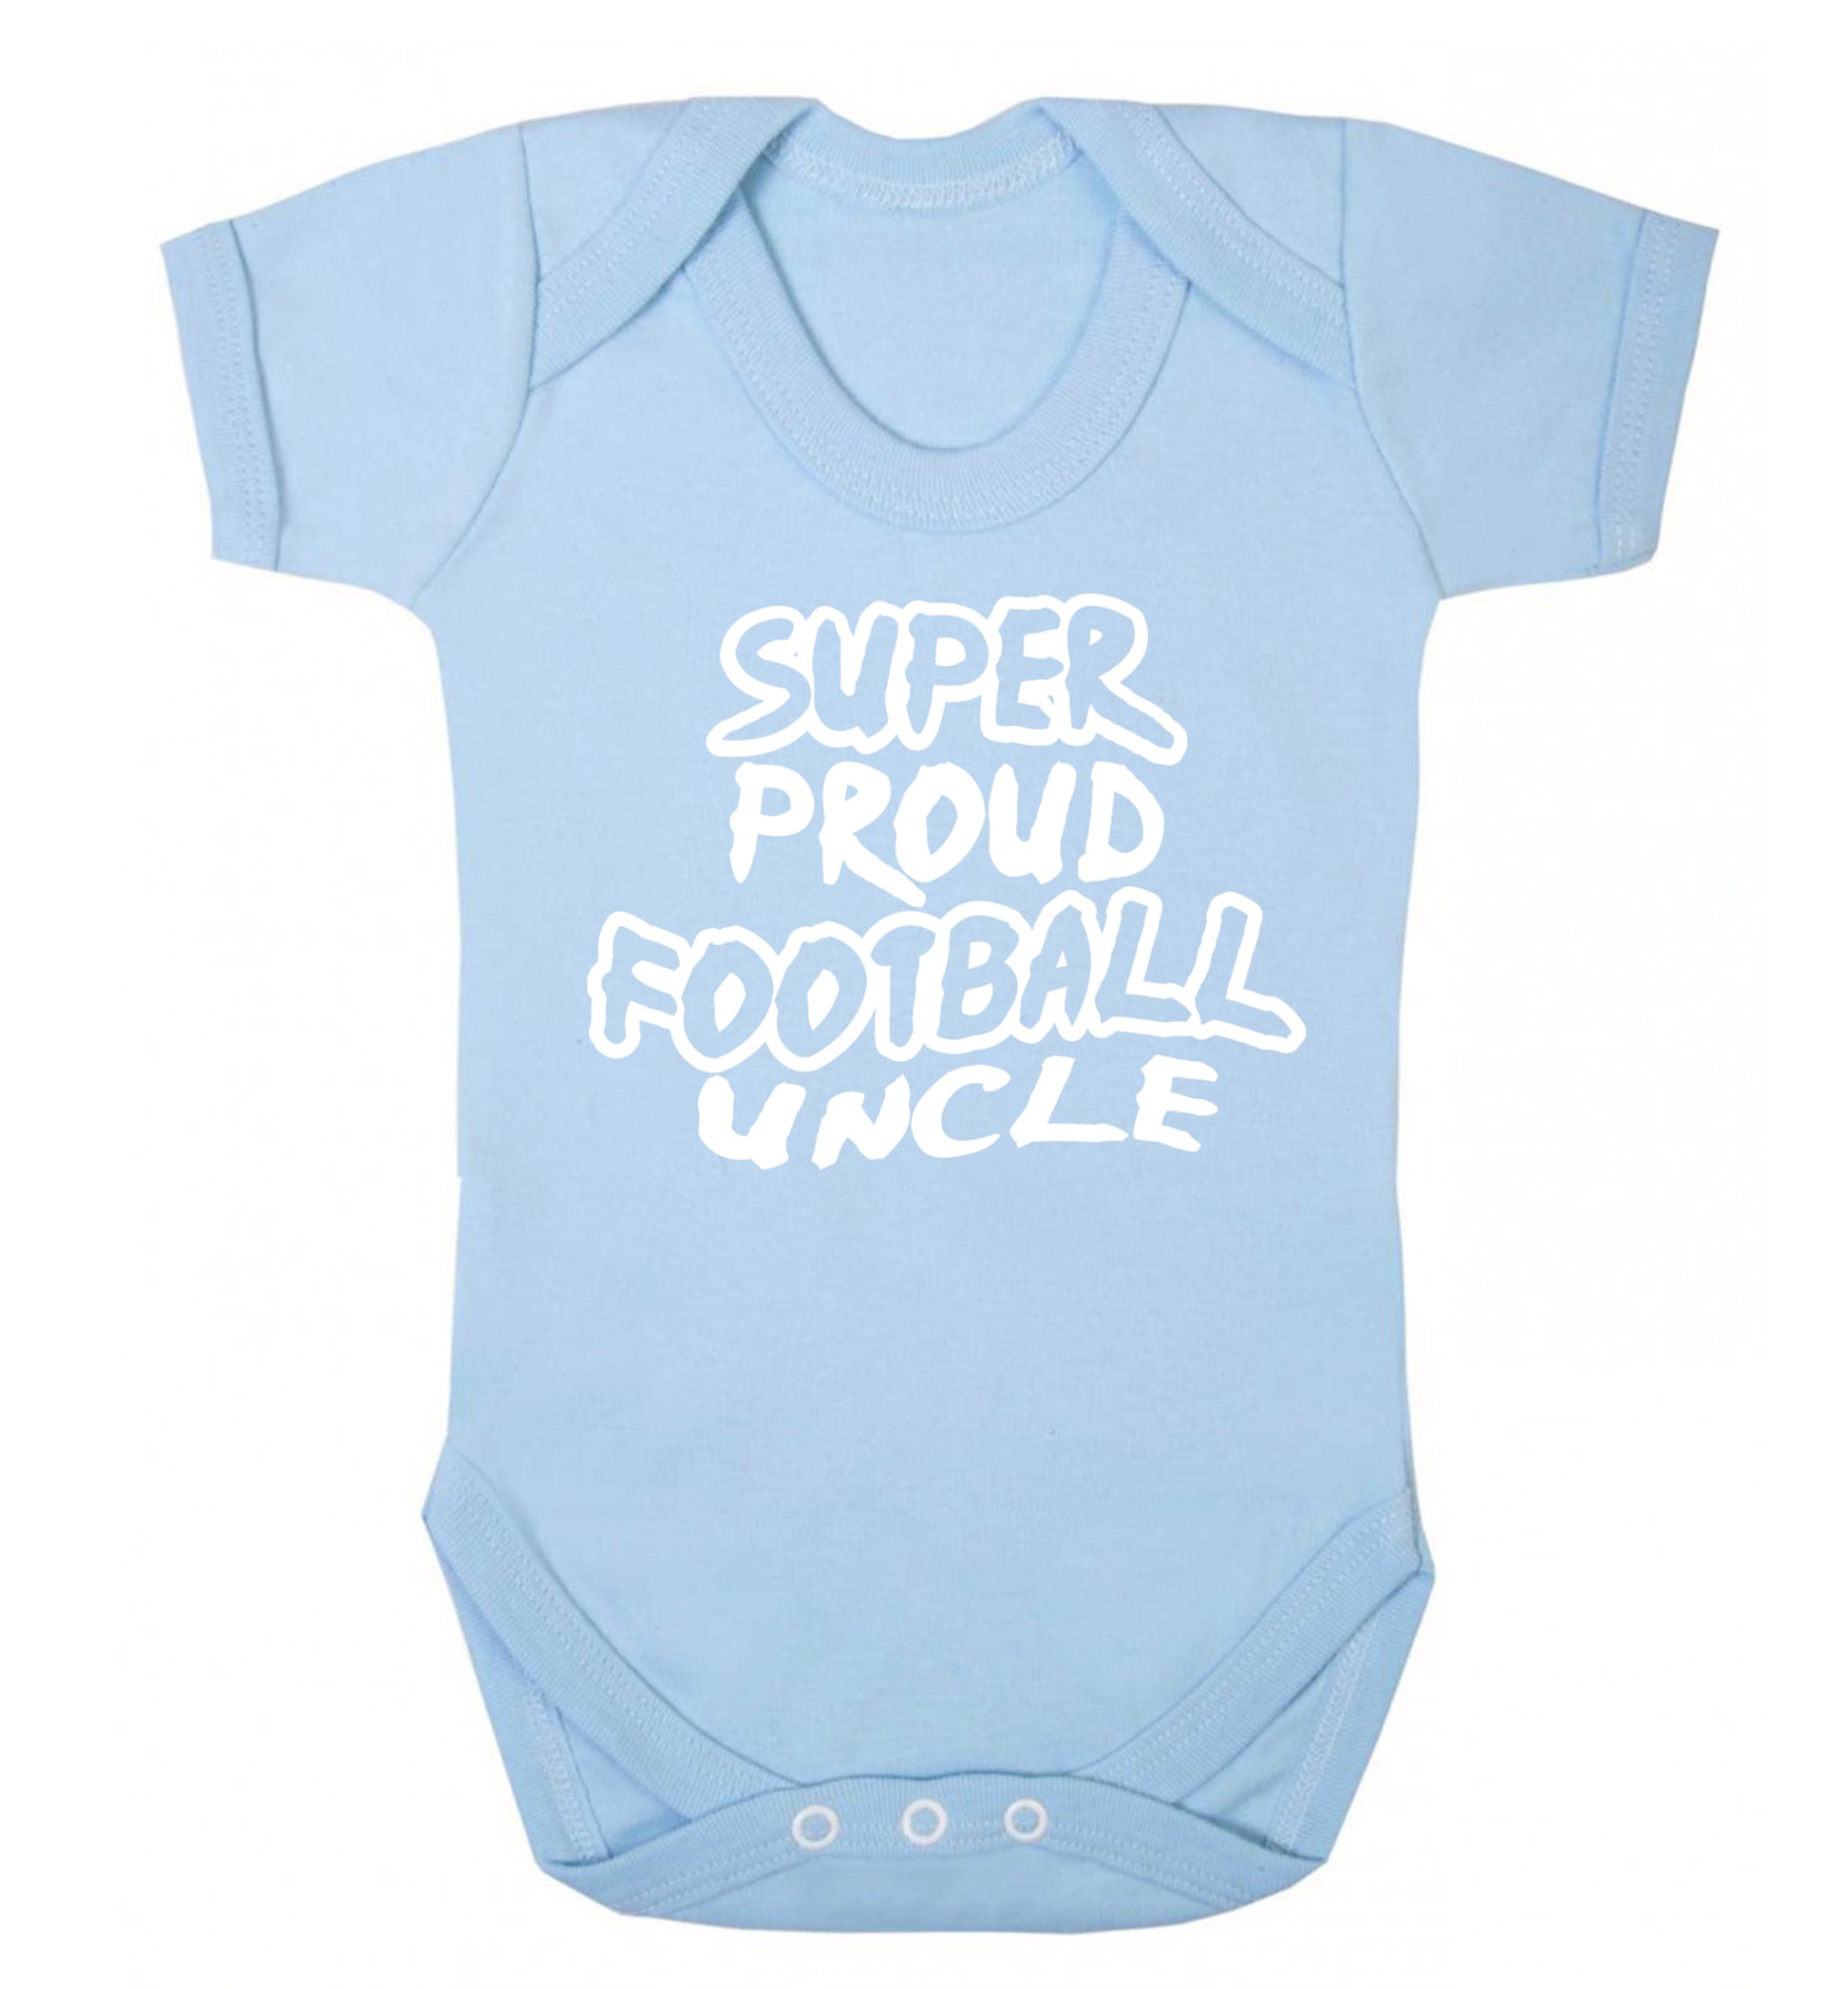 Super proud football uncle Baby Vest pale blue 18-24 months